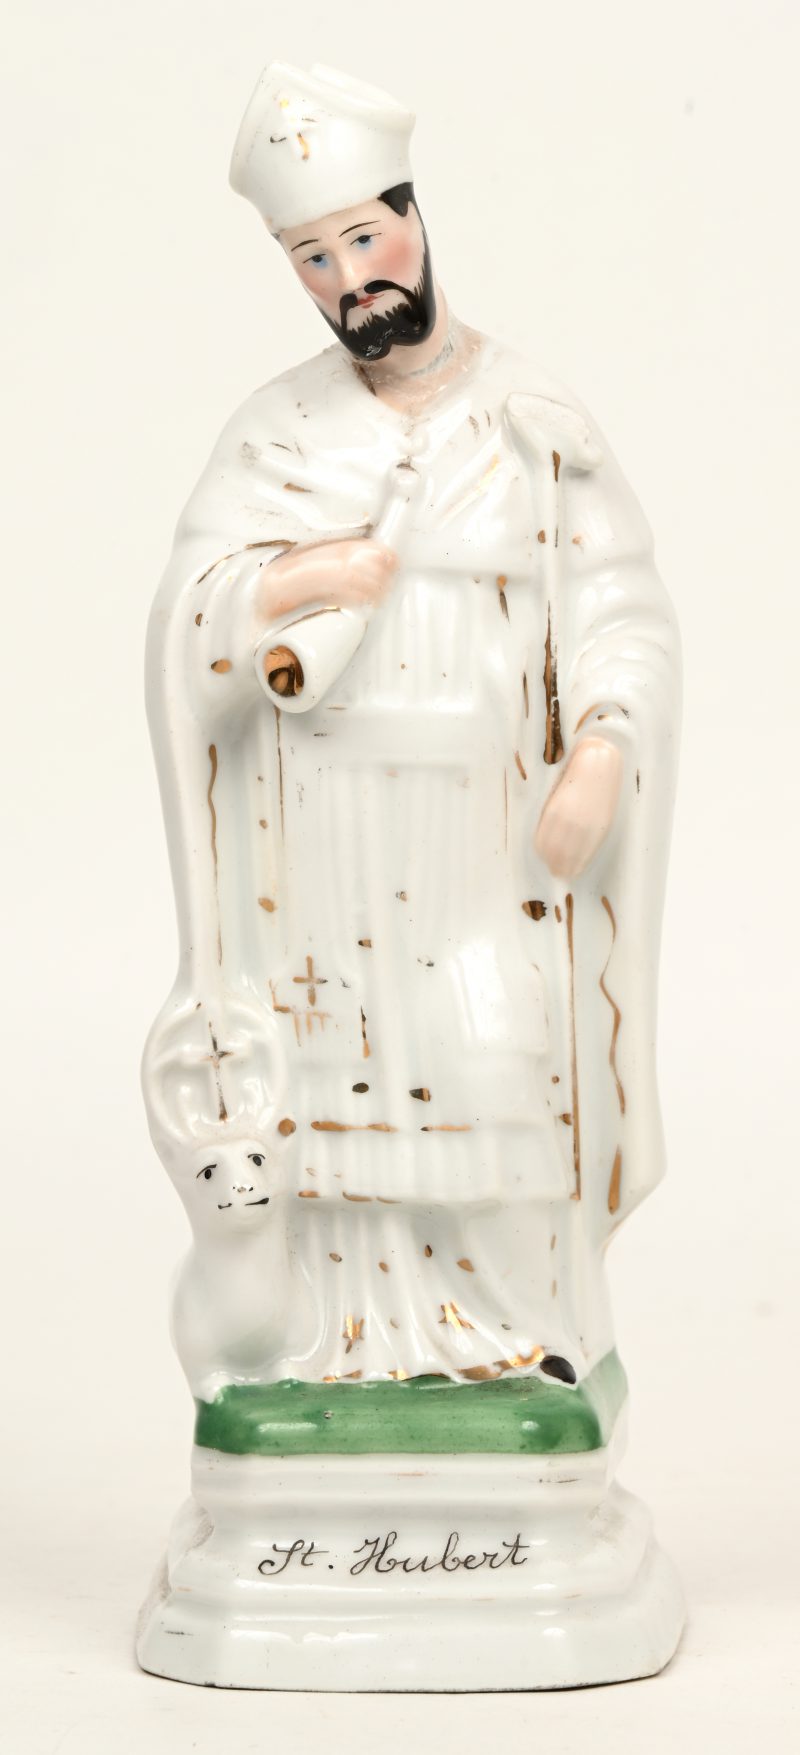 Een onthoofd porseleinen beeldje van St. Hubert. Lijmsporen door breuk-en herstelschade thv het hoofd.